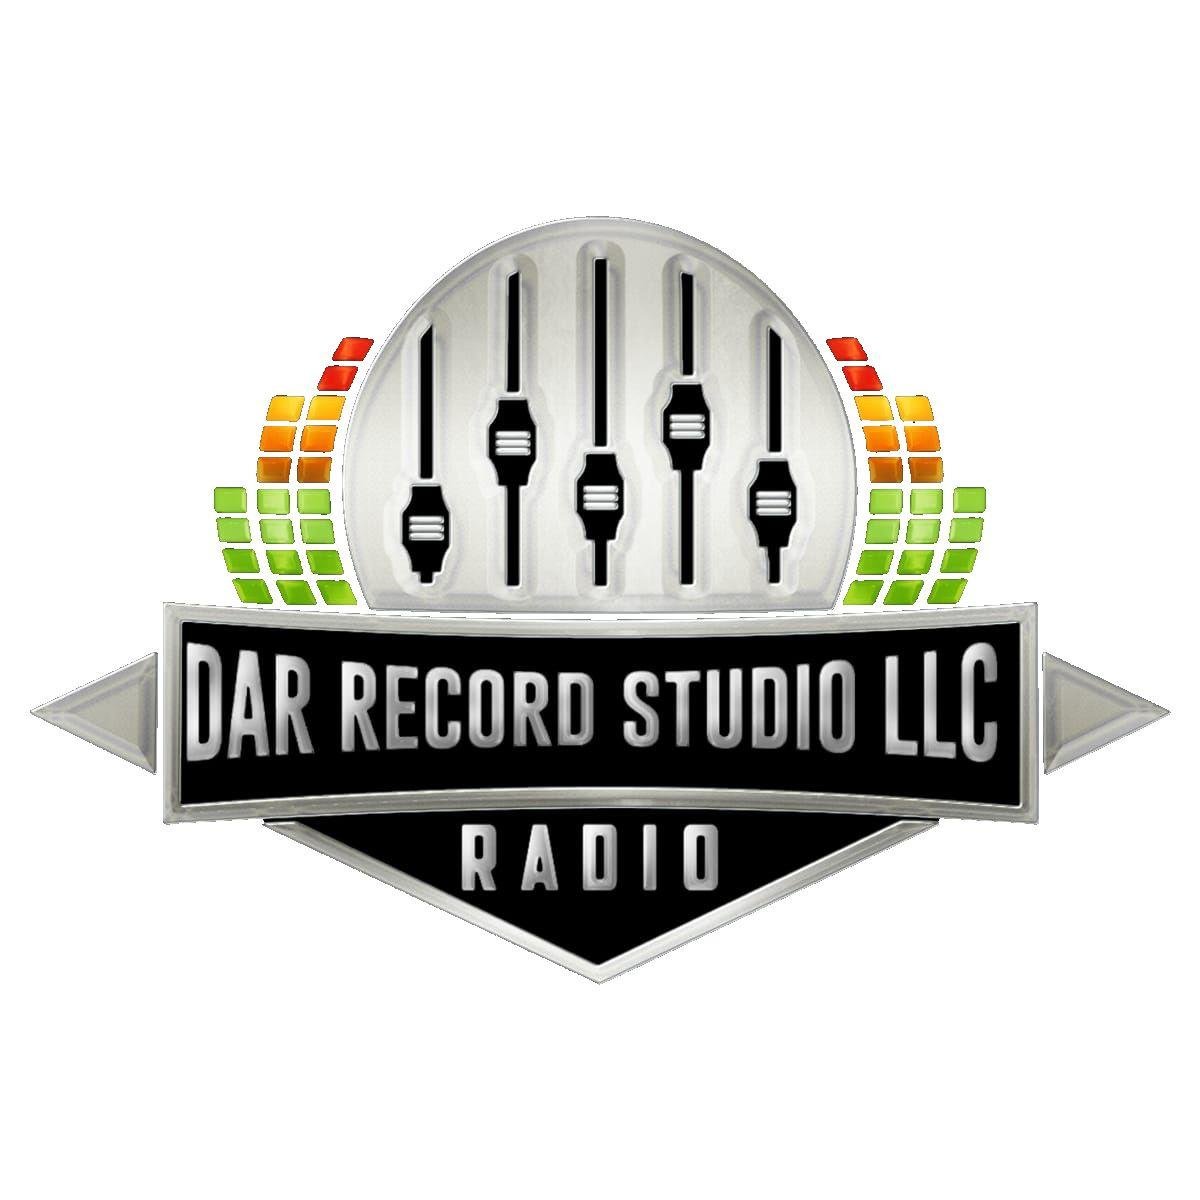 Dar Record Studio LLC